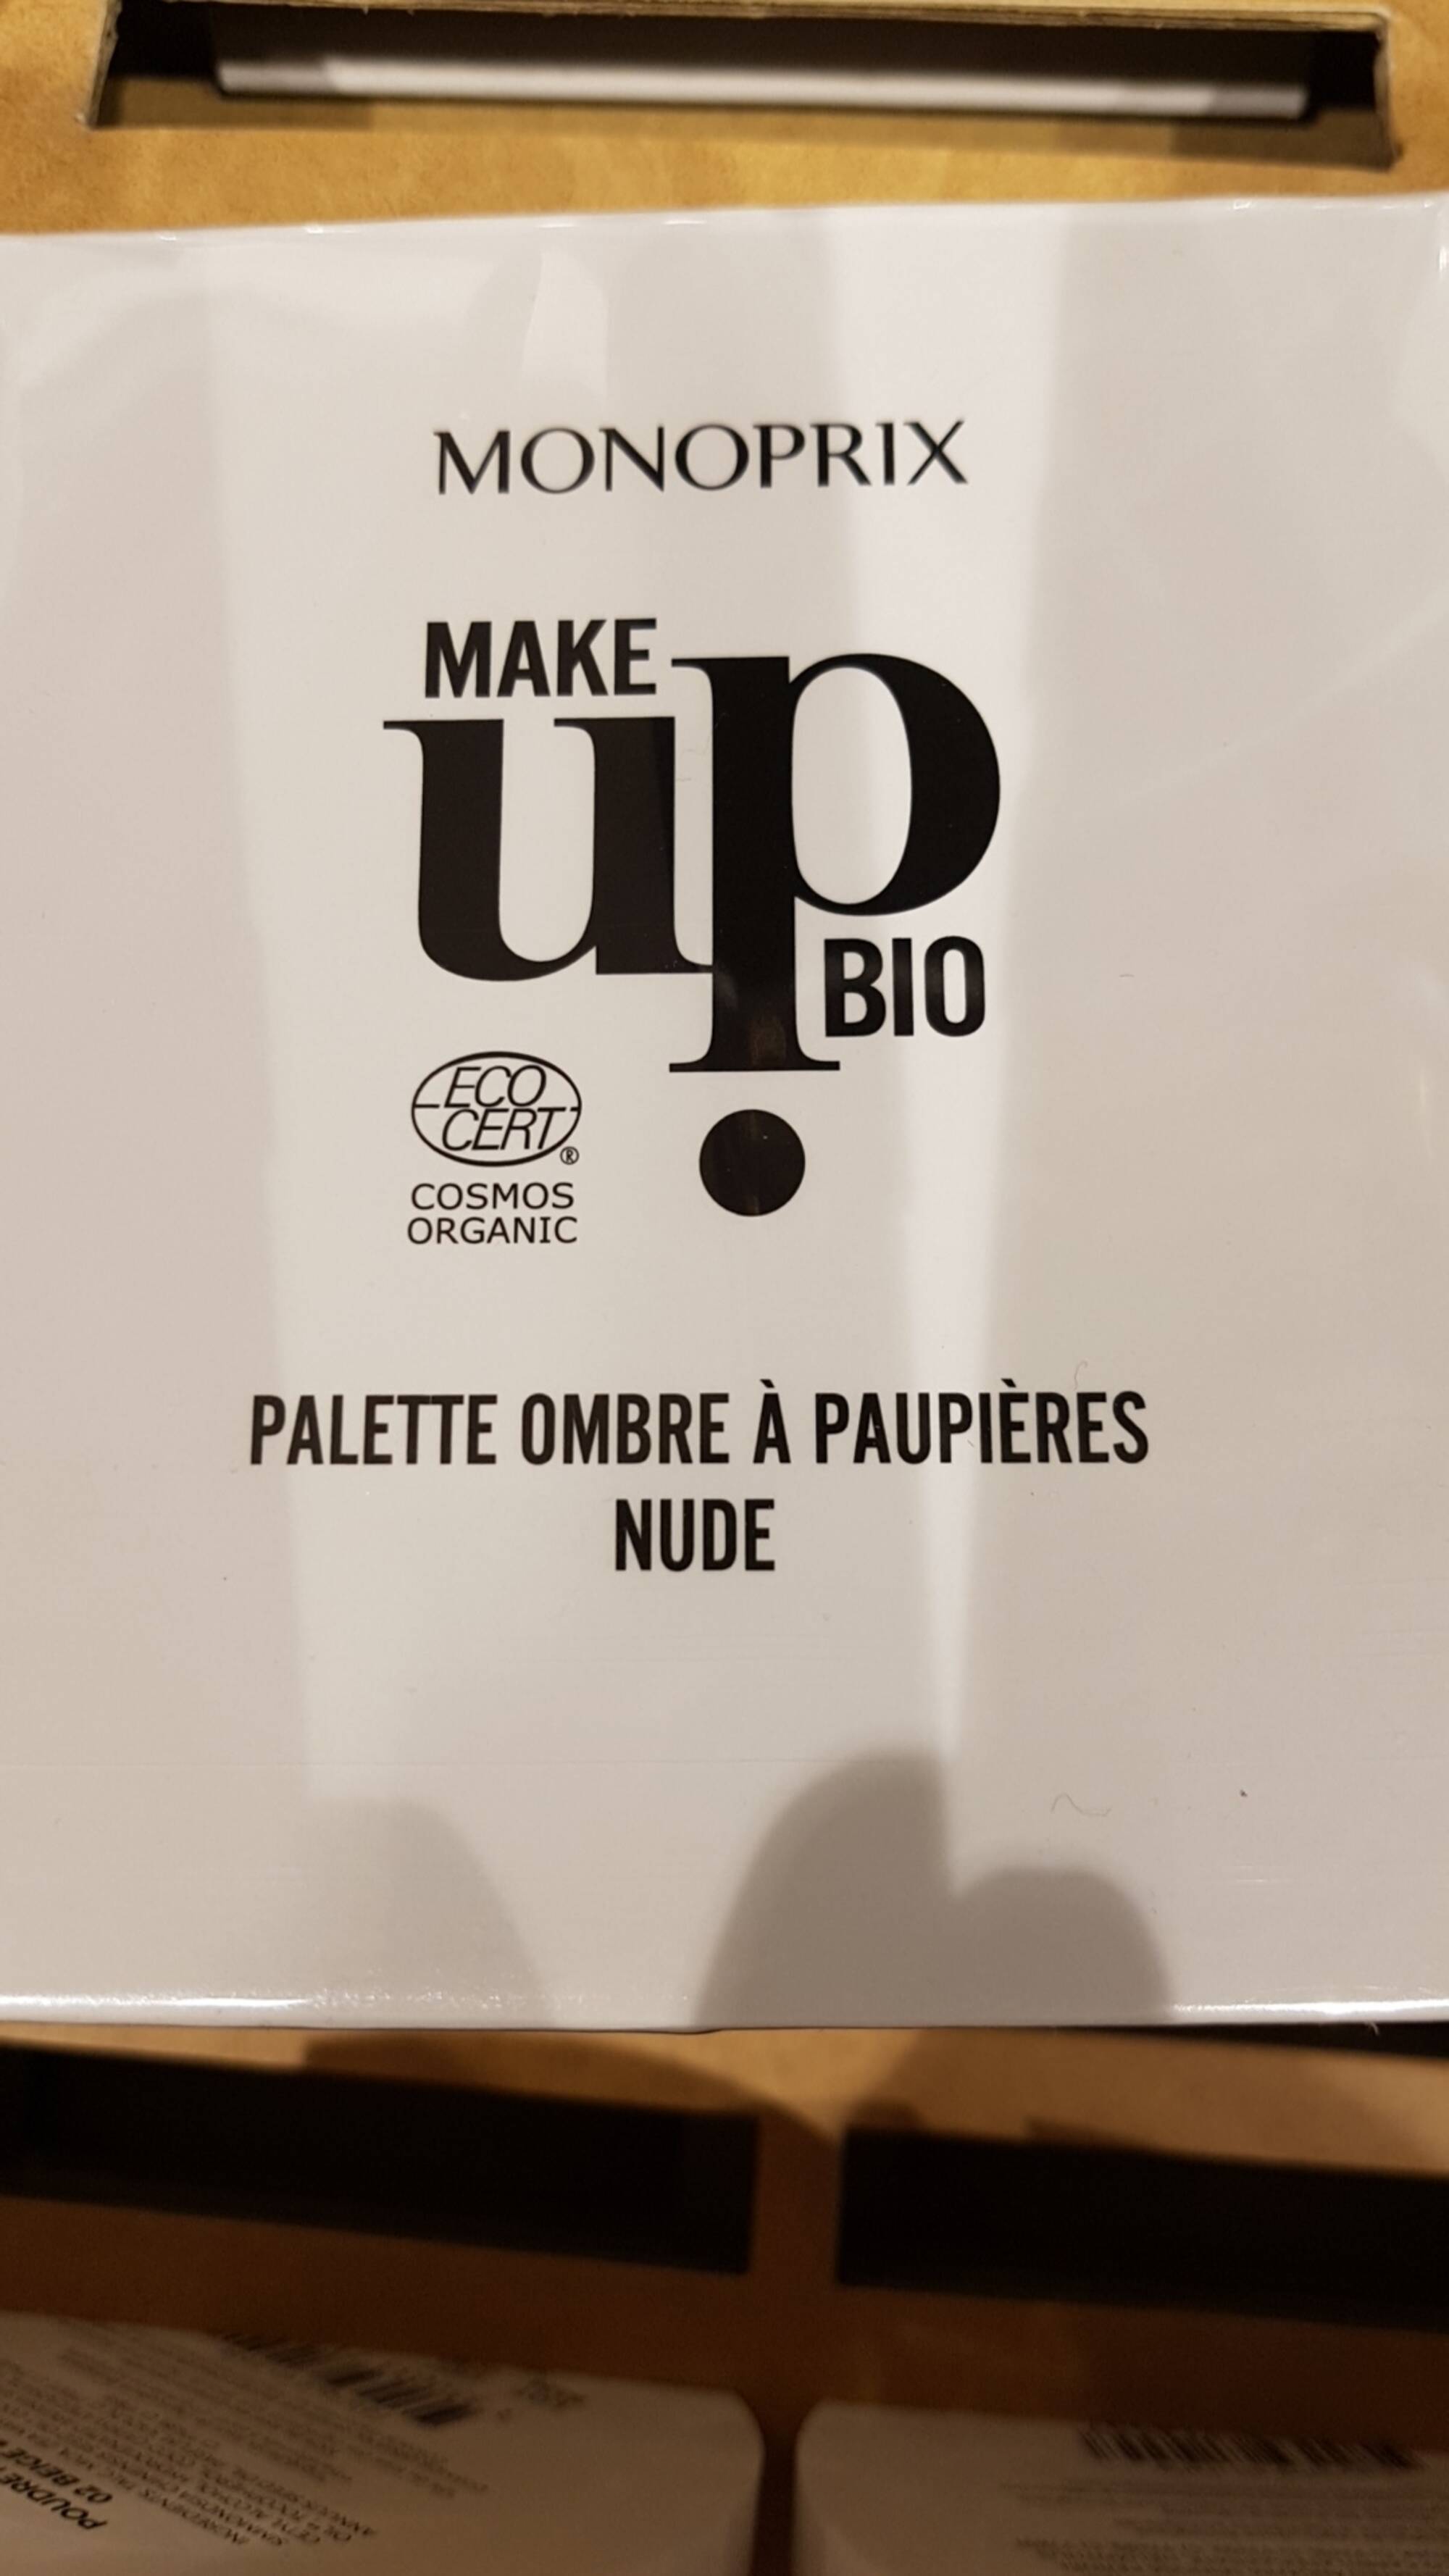 MONOPRIX - Make up bio - Palette ombre à paupières Nude